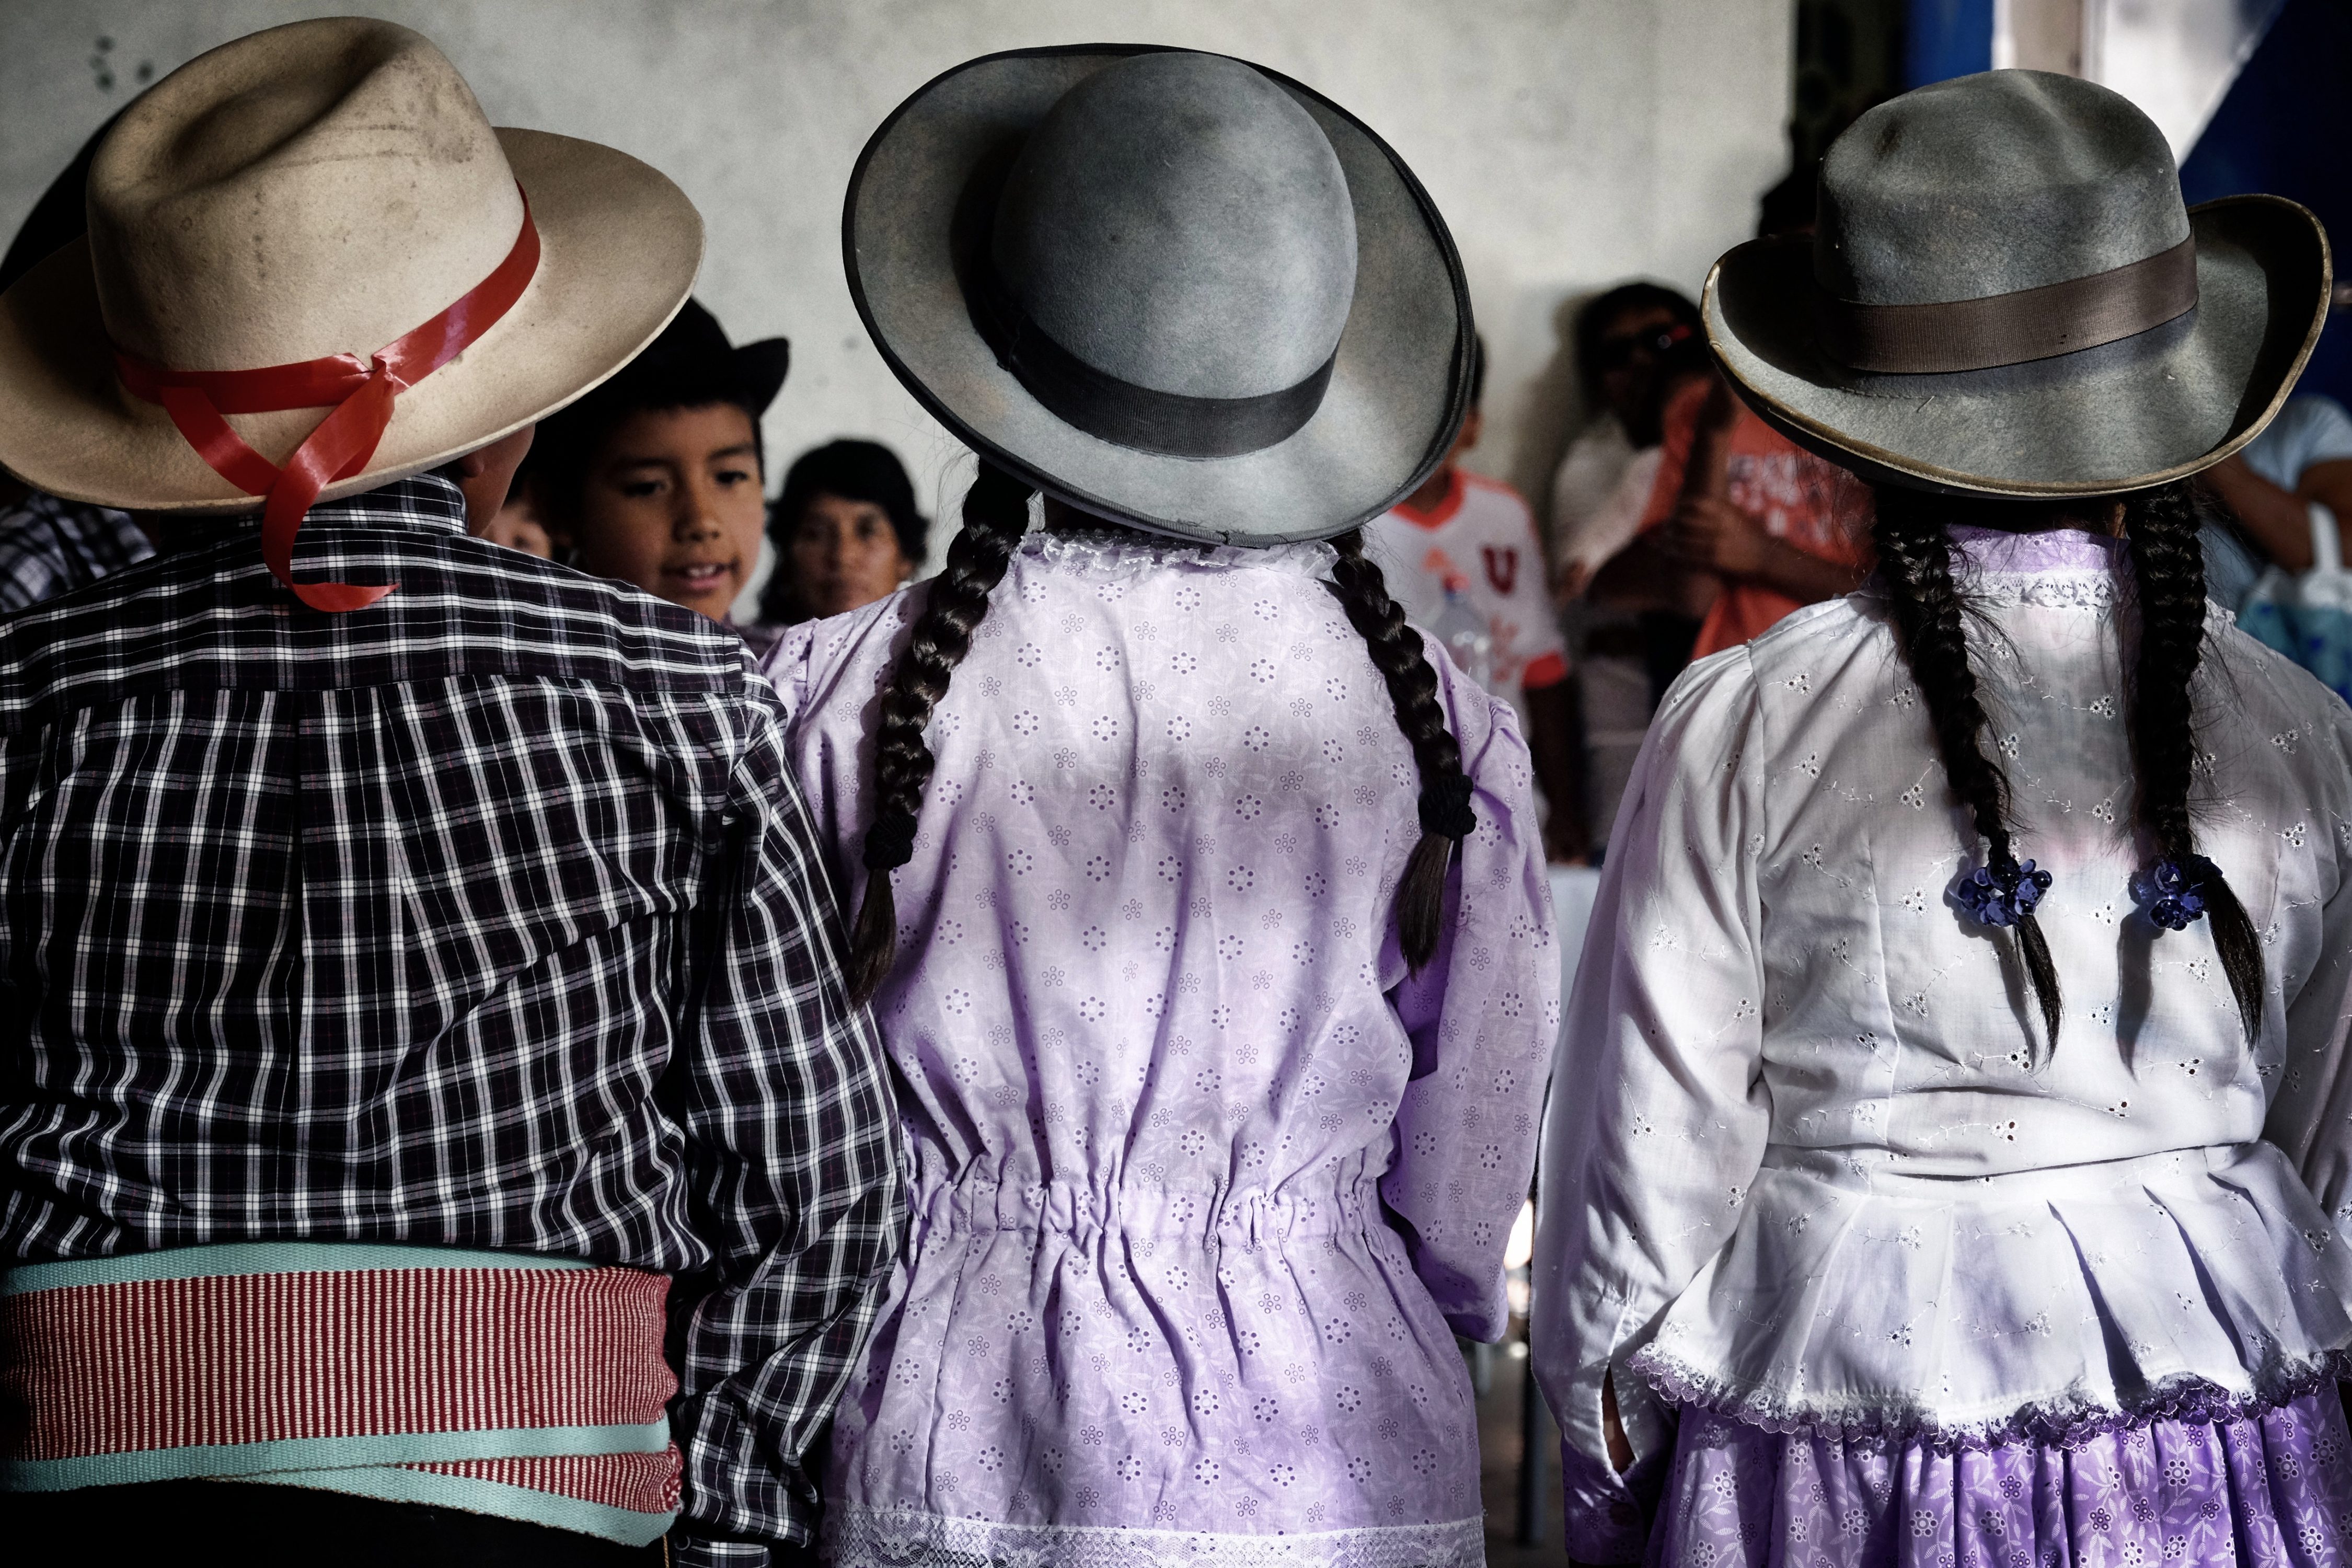 ALMA ha mantenido estrechas relaciones con las comunidades locales de Atacama y las ha estado apoyando en diferentes proyectos a través de los años a través de fondos de subvenciones. En esta foto, un grupo de niños de Toconao se prepara para una presentación / ceremonia tradicional. Crédito: R. Bennett – ALMA (ESO / NAOJ / NRAO)